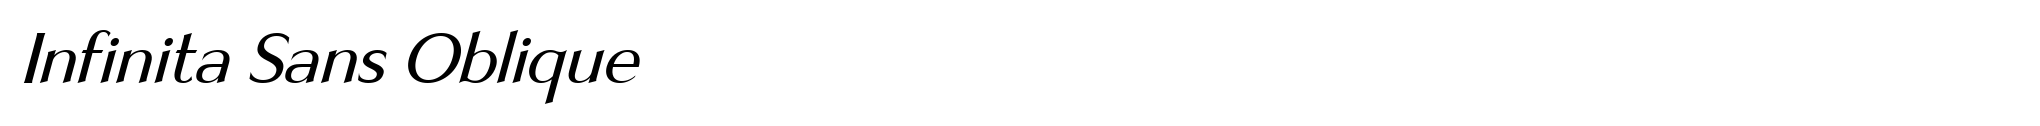 Infinita Sans Oblique image